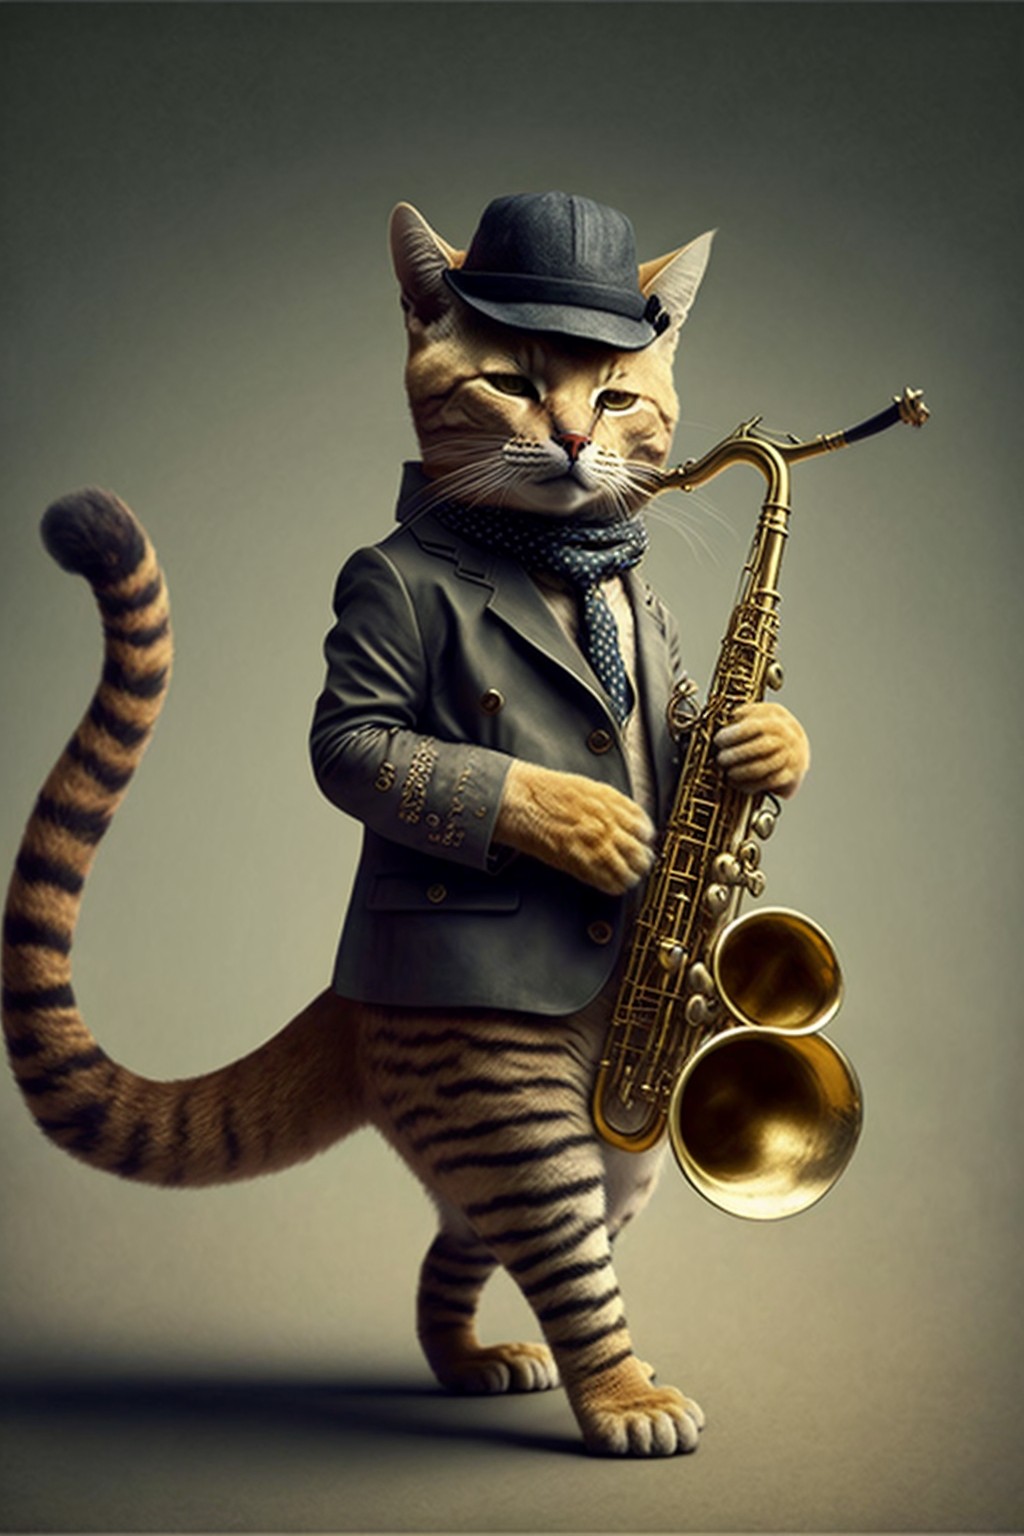 一只在吹奏萨克斯的猫咪